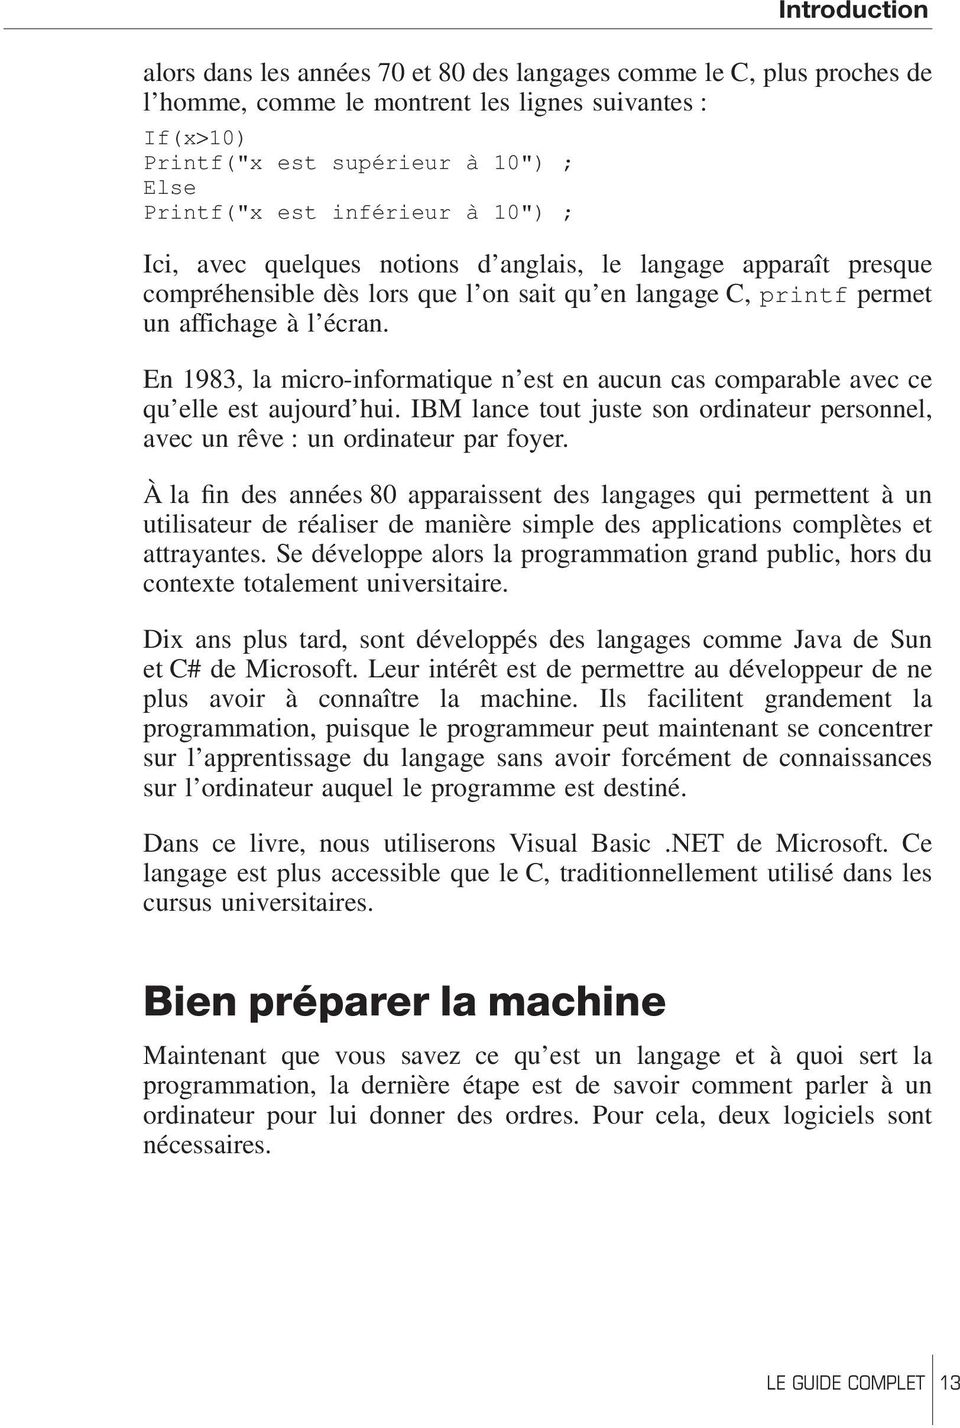 En 1983, la micro-informatique n est en aucun cas comparable avec ce qu elle est aujourd hui. IBM lance tout juste son ordinateur personnel, avec un rêve : un ordinateur par foyer.